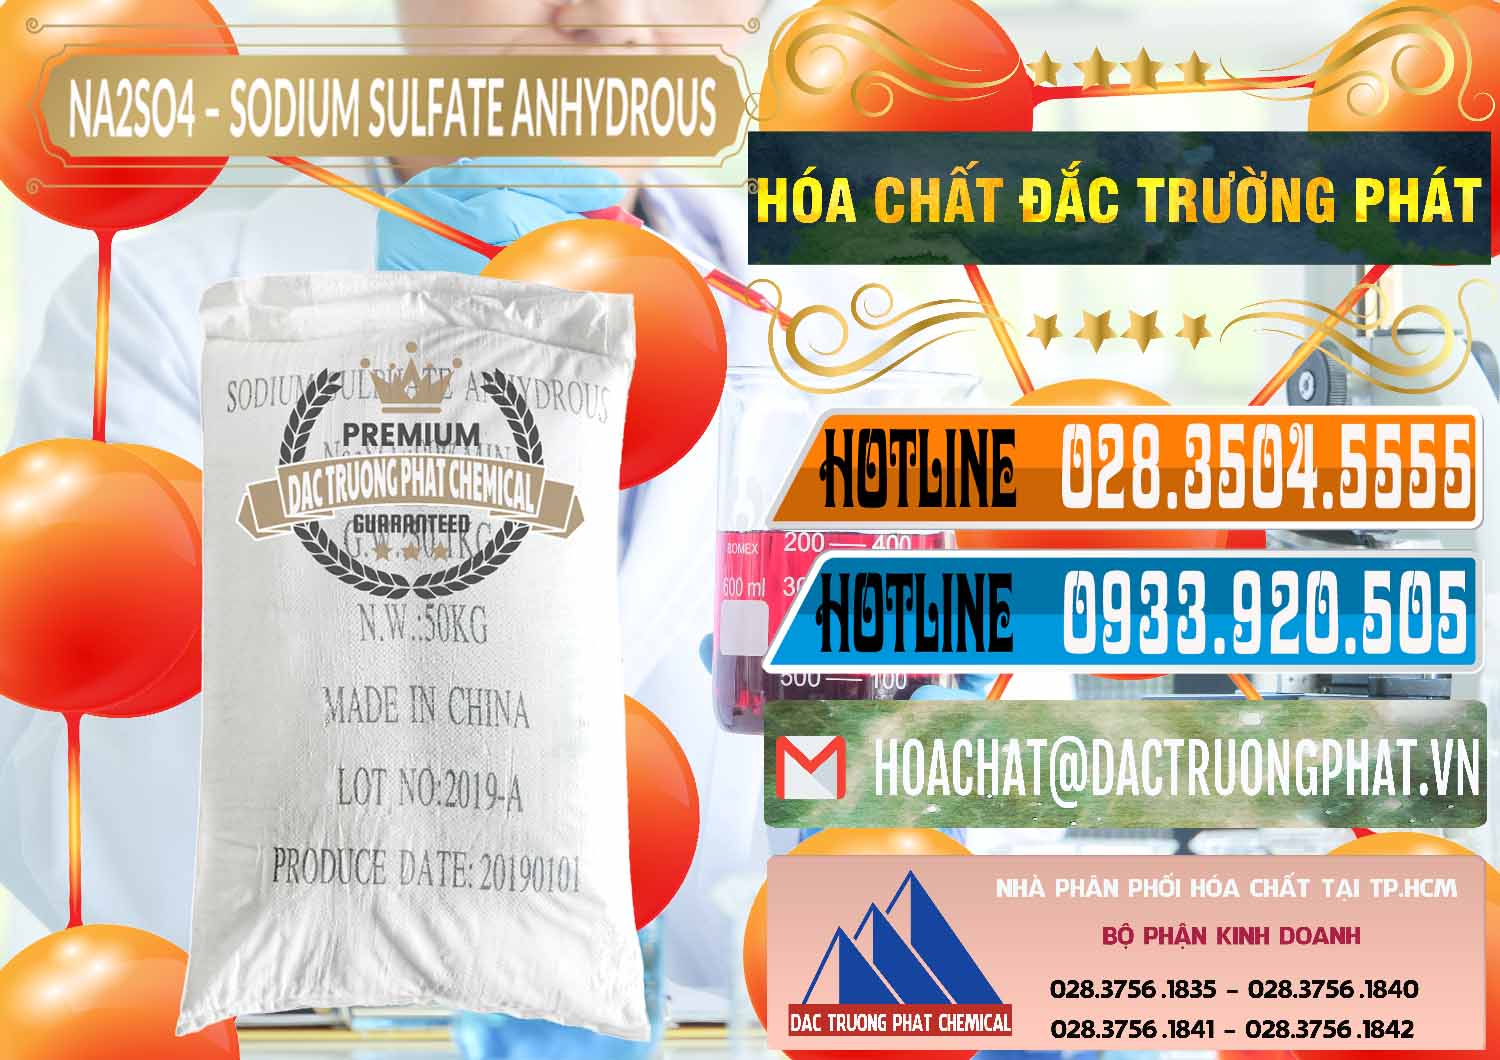 Nơi chuyên bán _ cung cấp Sodium Sulphate - Muối Sunfat Na2SO4 PH 6-8 Trung Quốc China - 0099 - Đơn vị chuyên cung cấp & nhập khẩu hóa chất tại TP.HCM - stmp.net